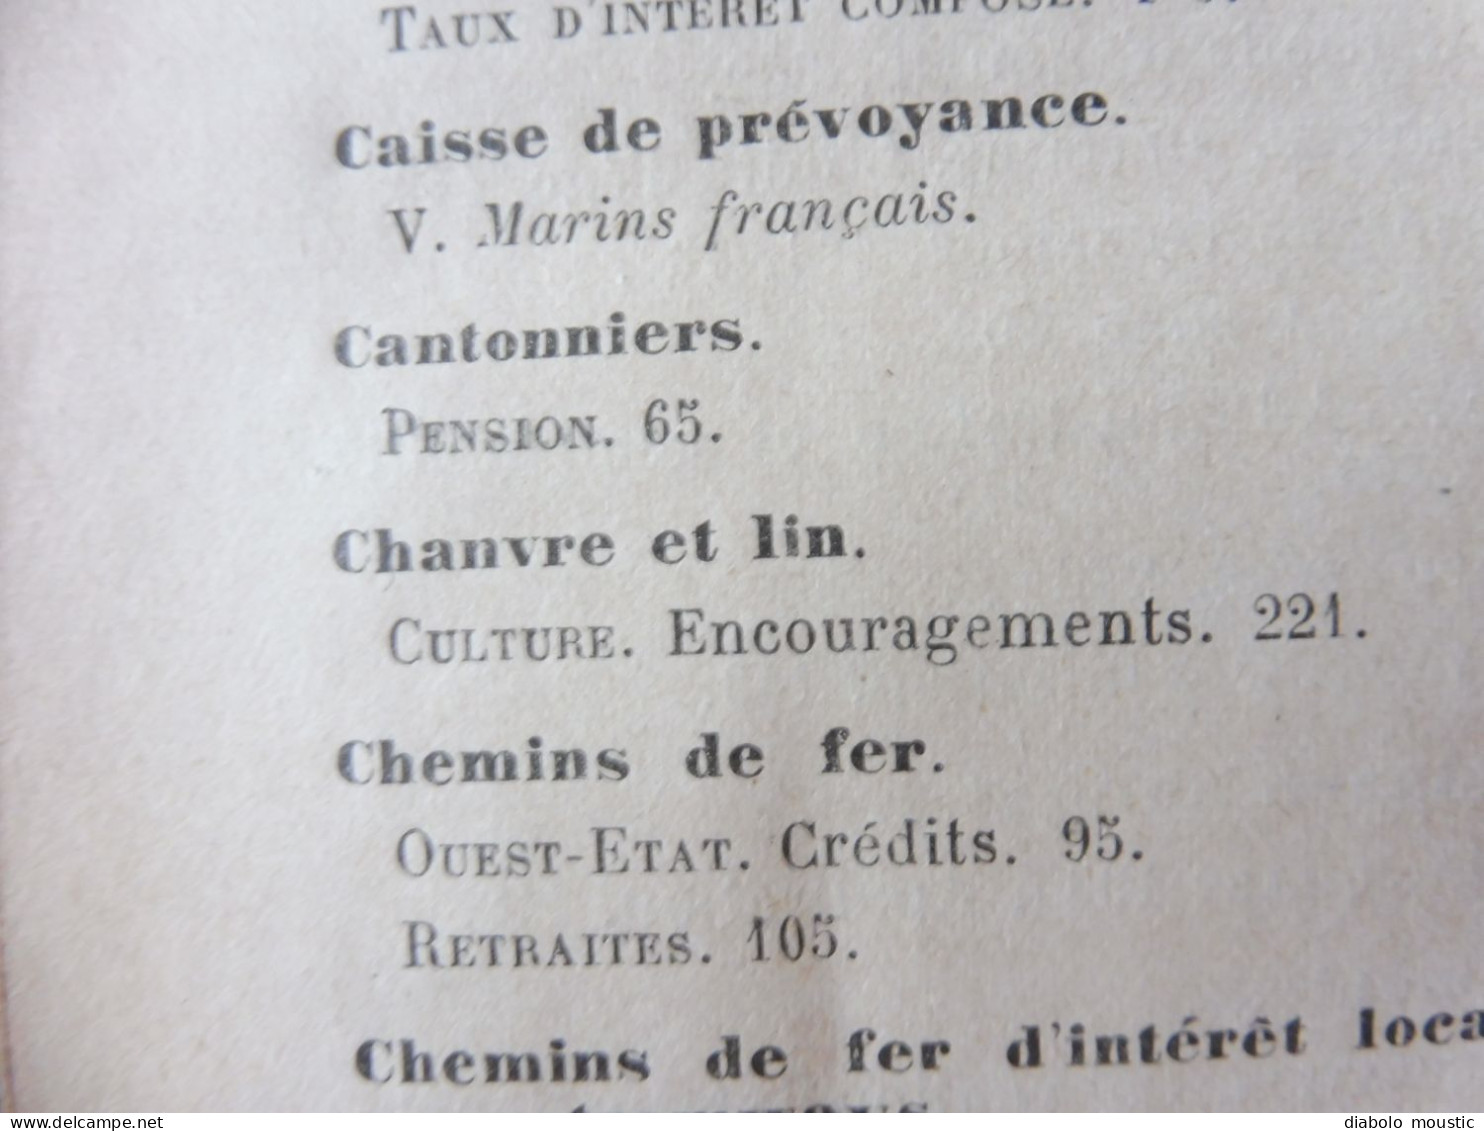 1910  RECUEIL des LOIS : Prostitution des mineurs, Légion étrangère, Sections Spéciales, Raisins et vendange; Etc ; Etc